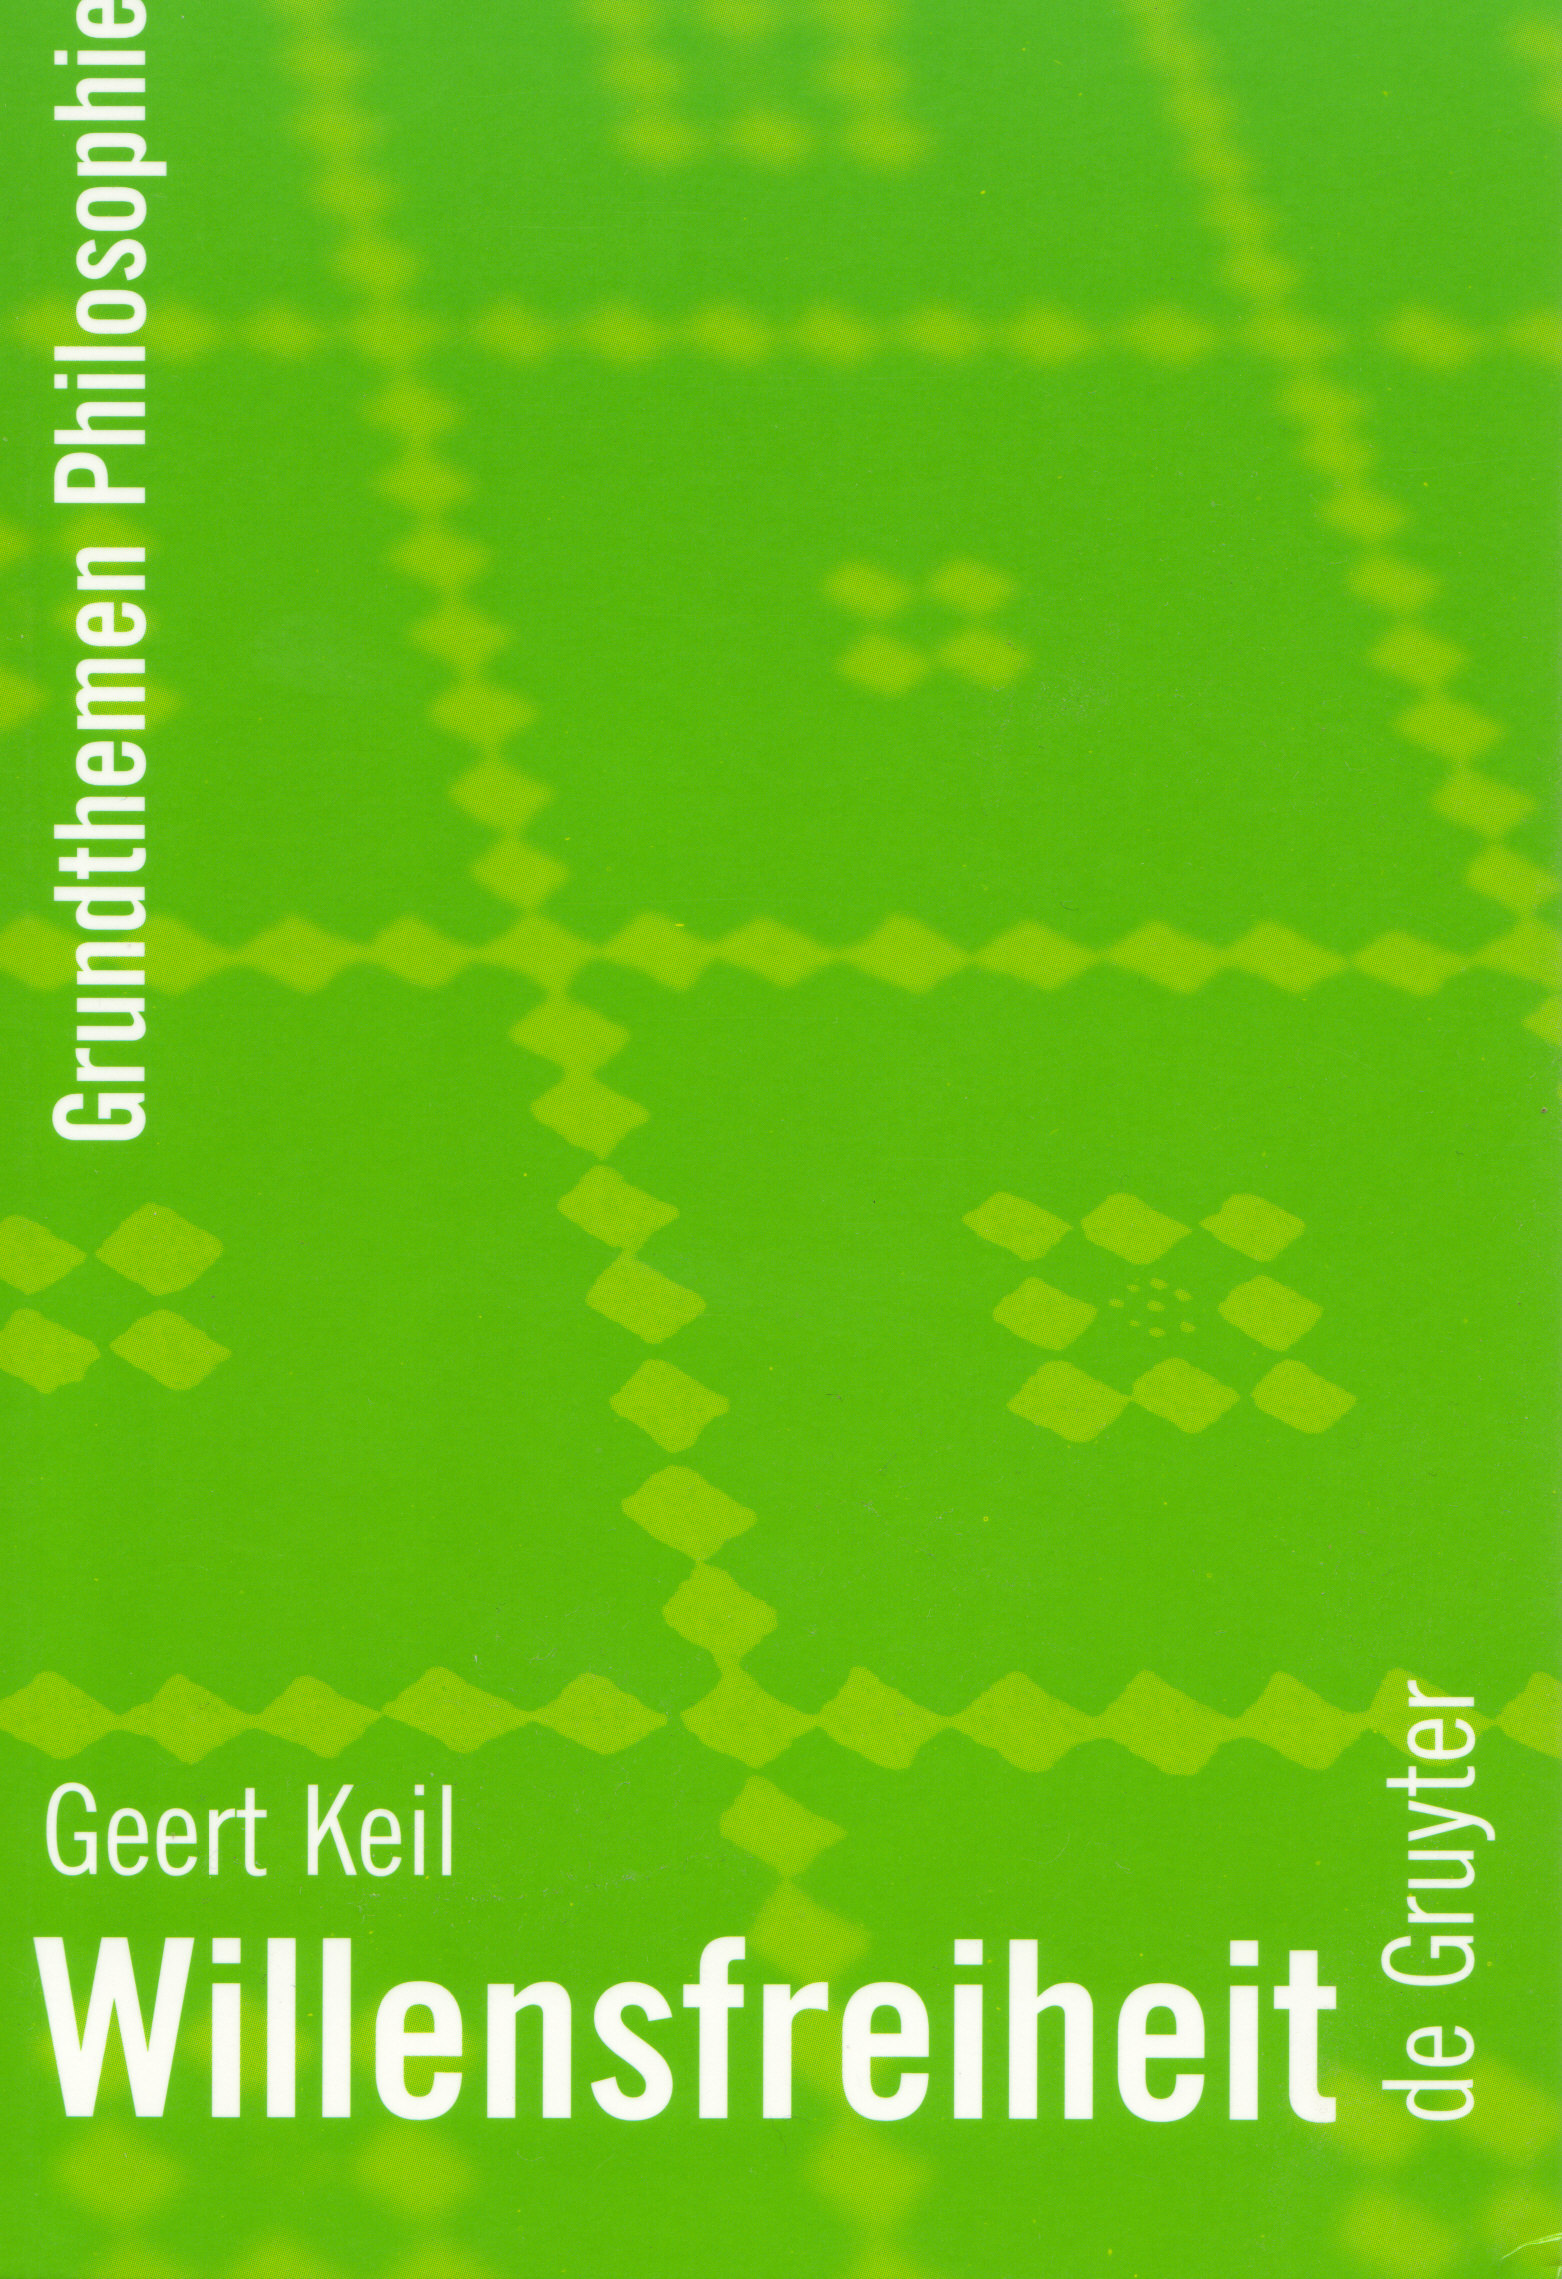 Gert Keil